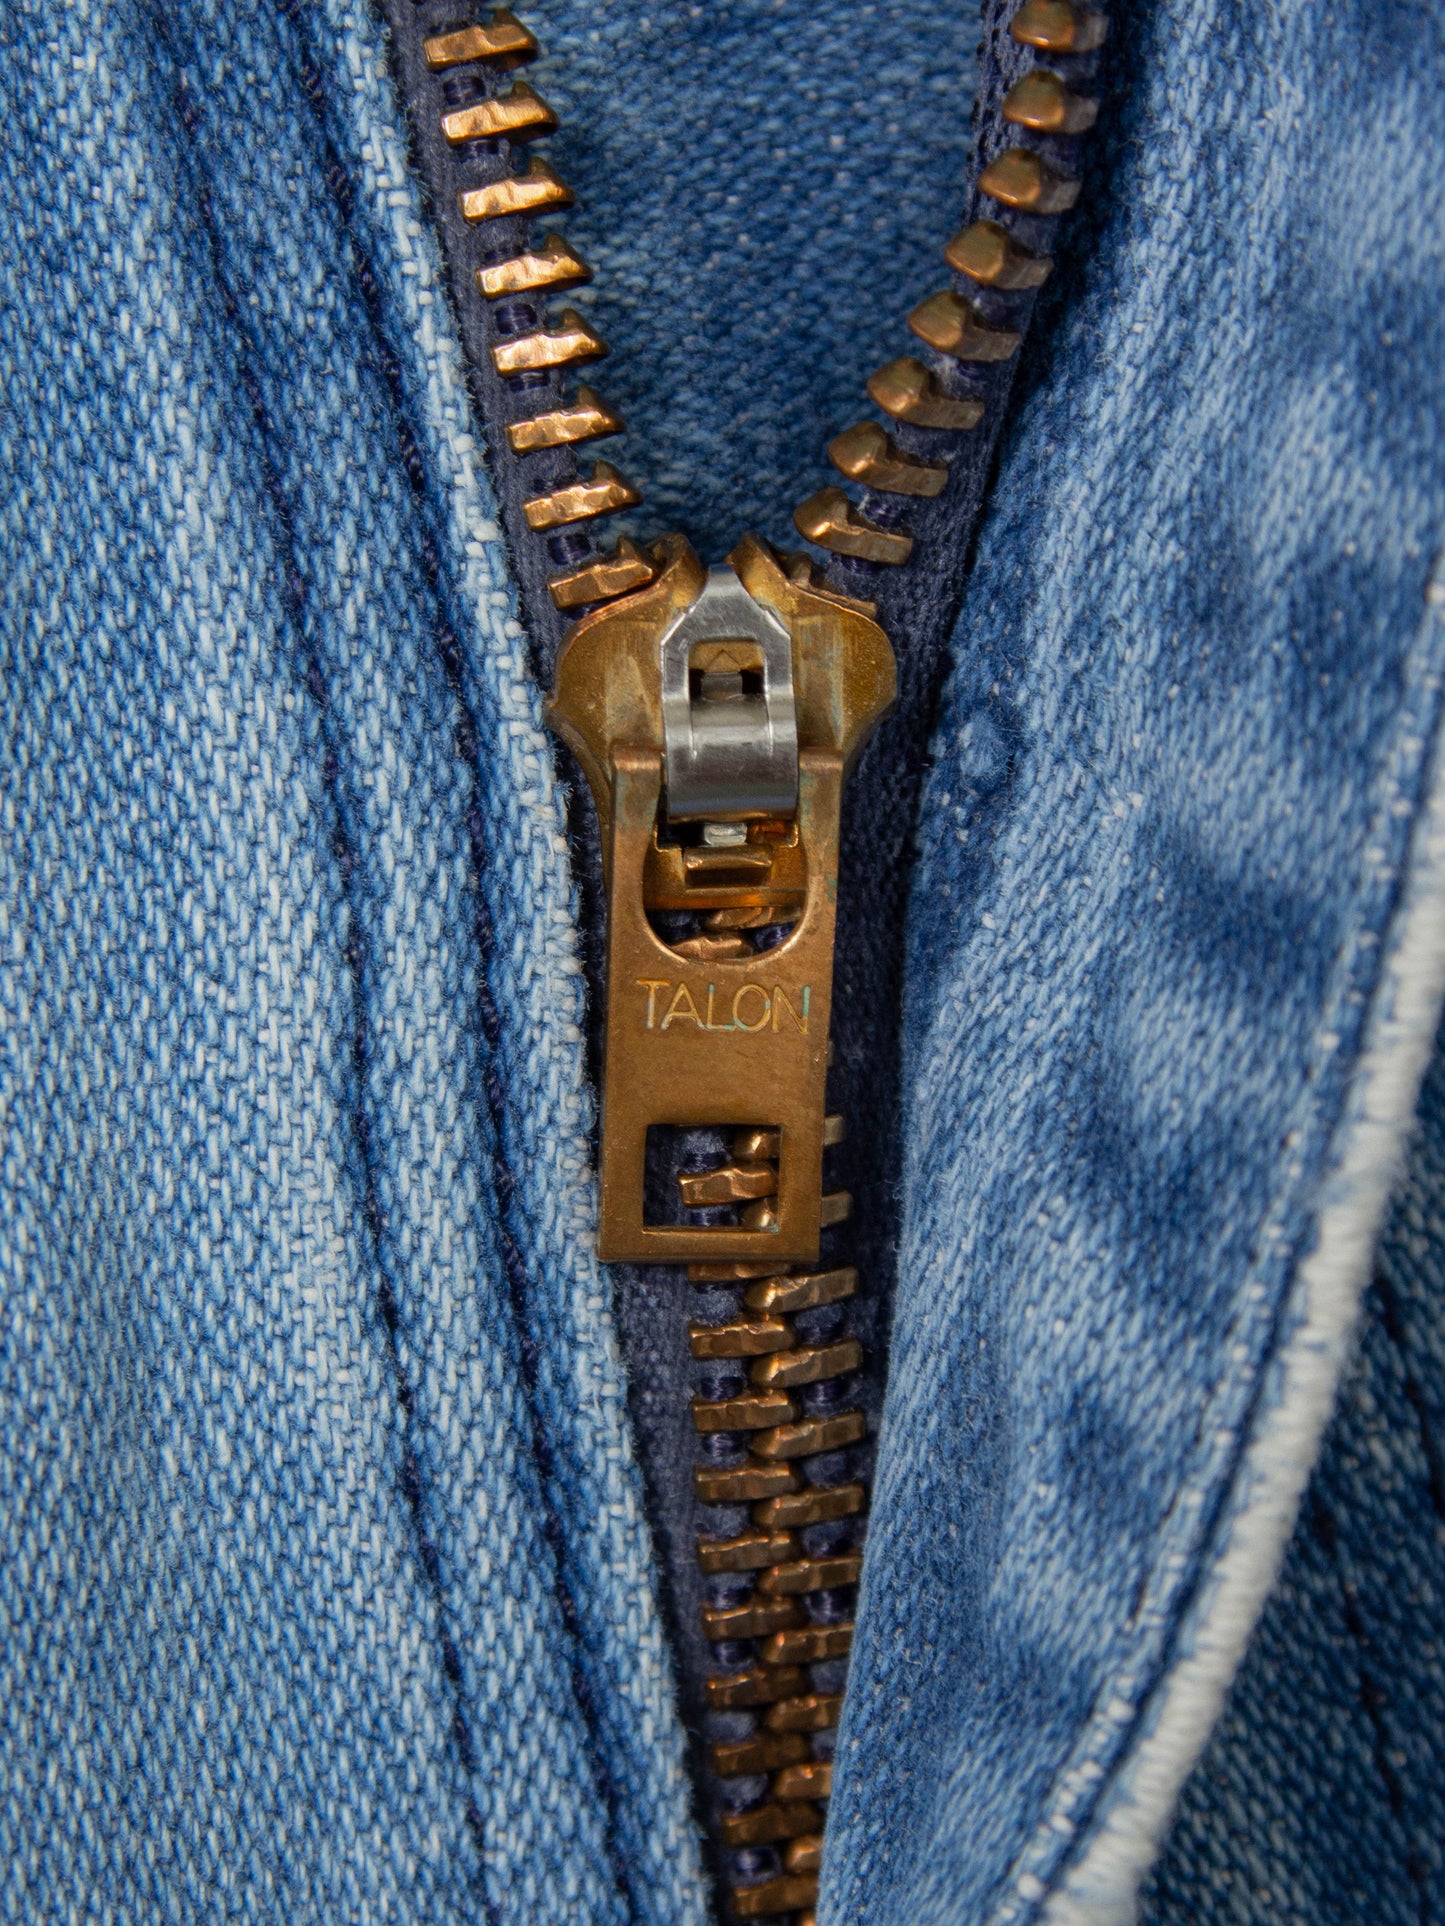 Vtg 1980s Wrangler Bootcut Jeans (34x29)